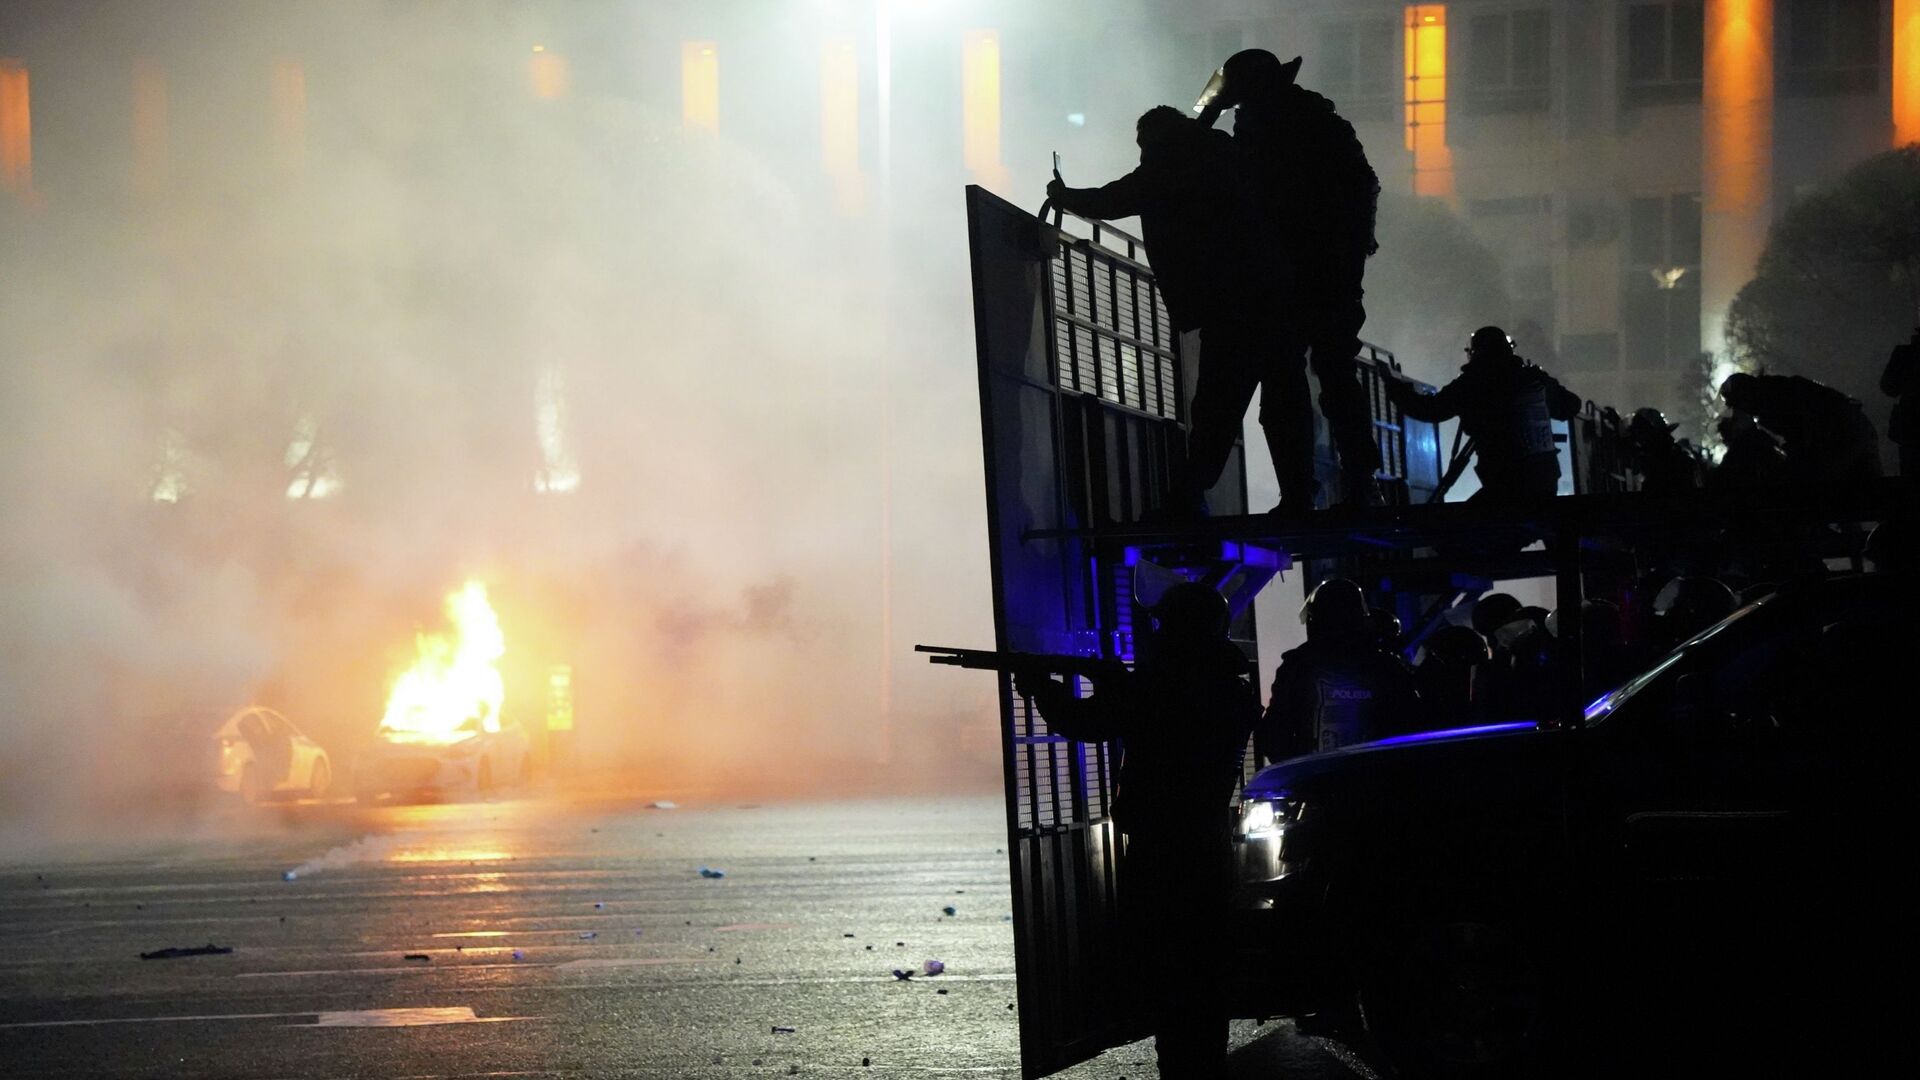 Полицейская машина горит, когда ОМОН готовится остановить демонстрантов в центре Алматы, Казахстан, среда, 5 января 2022 г.  - Sputnik Қазақстан, 1920, 21.01.2022